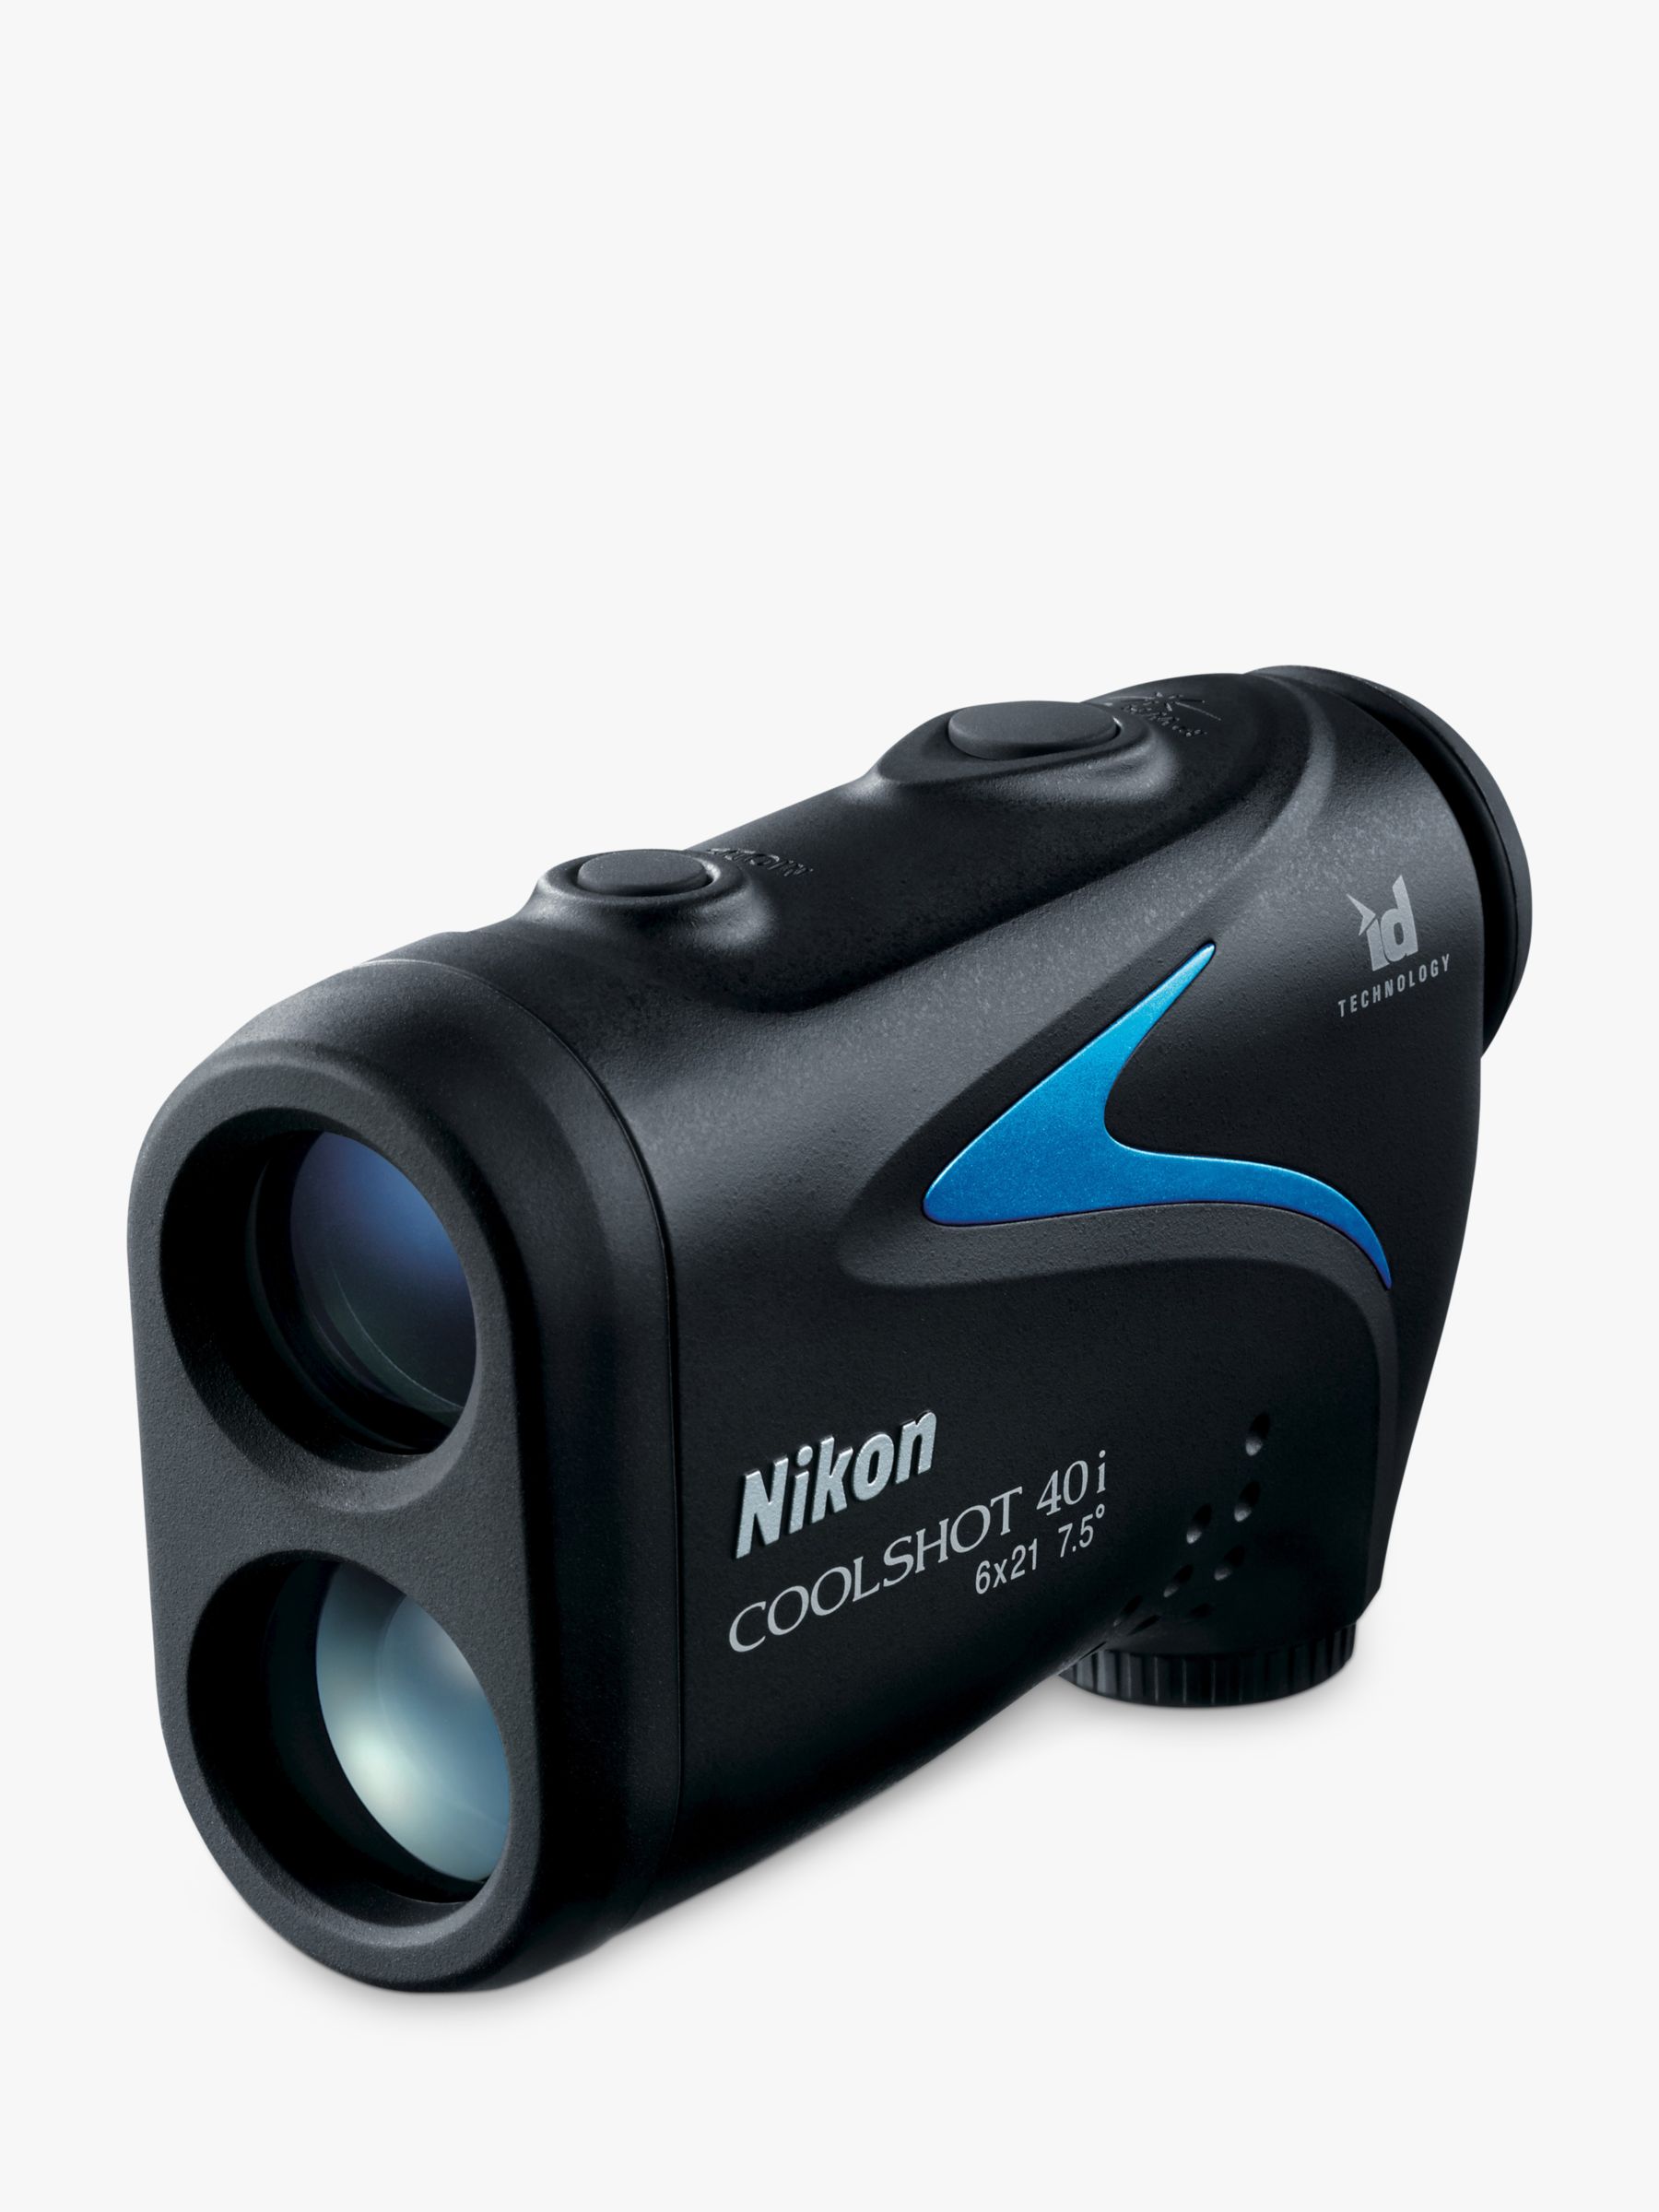 Nikon COOLSHOT 40i Laser Range Finder With 8-650 Yard Range & Angle Compensation Technology